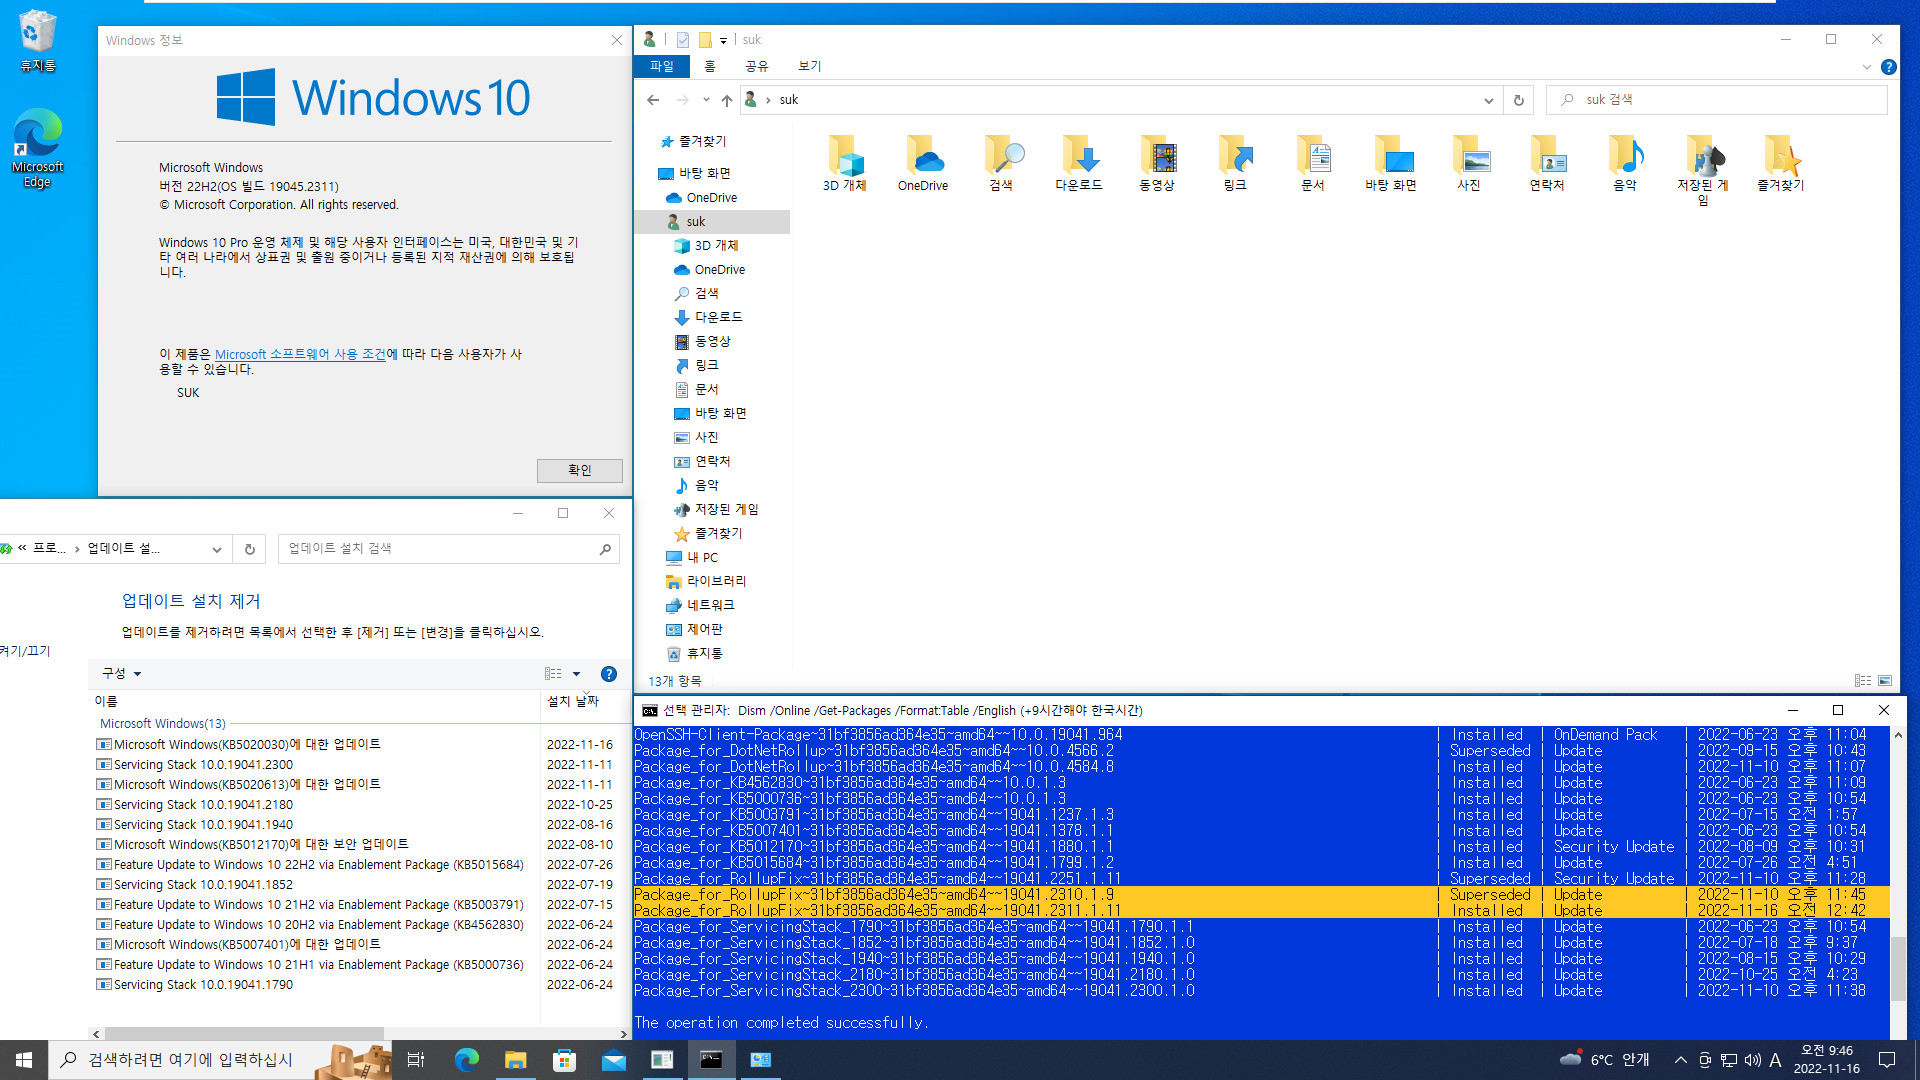 2022-11-16 수요일 - 선택적 업데이트 - Windows 10 버전 22H2, 빌드 19045.2311 - 공용 누적 업데이트 KB5020030. - vmware에 설치 2022-11-16_094652.jpg